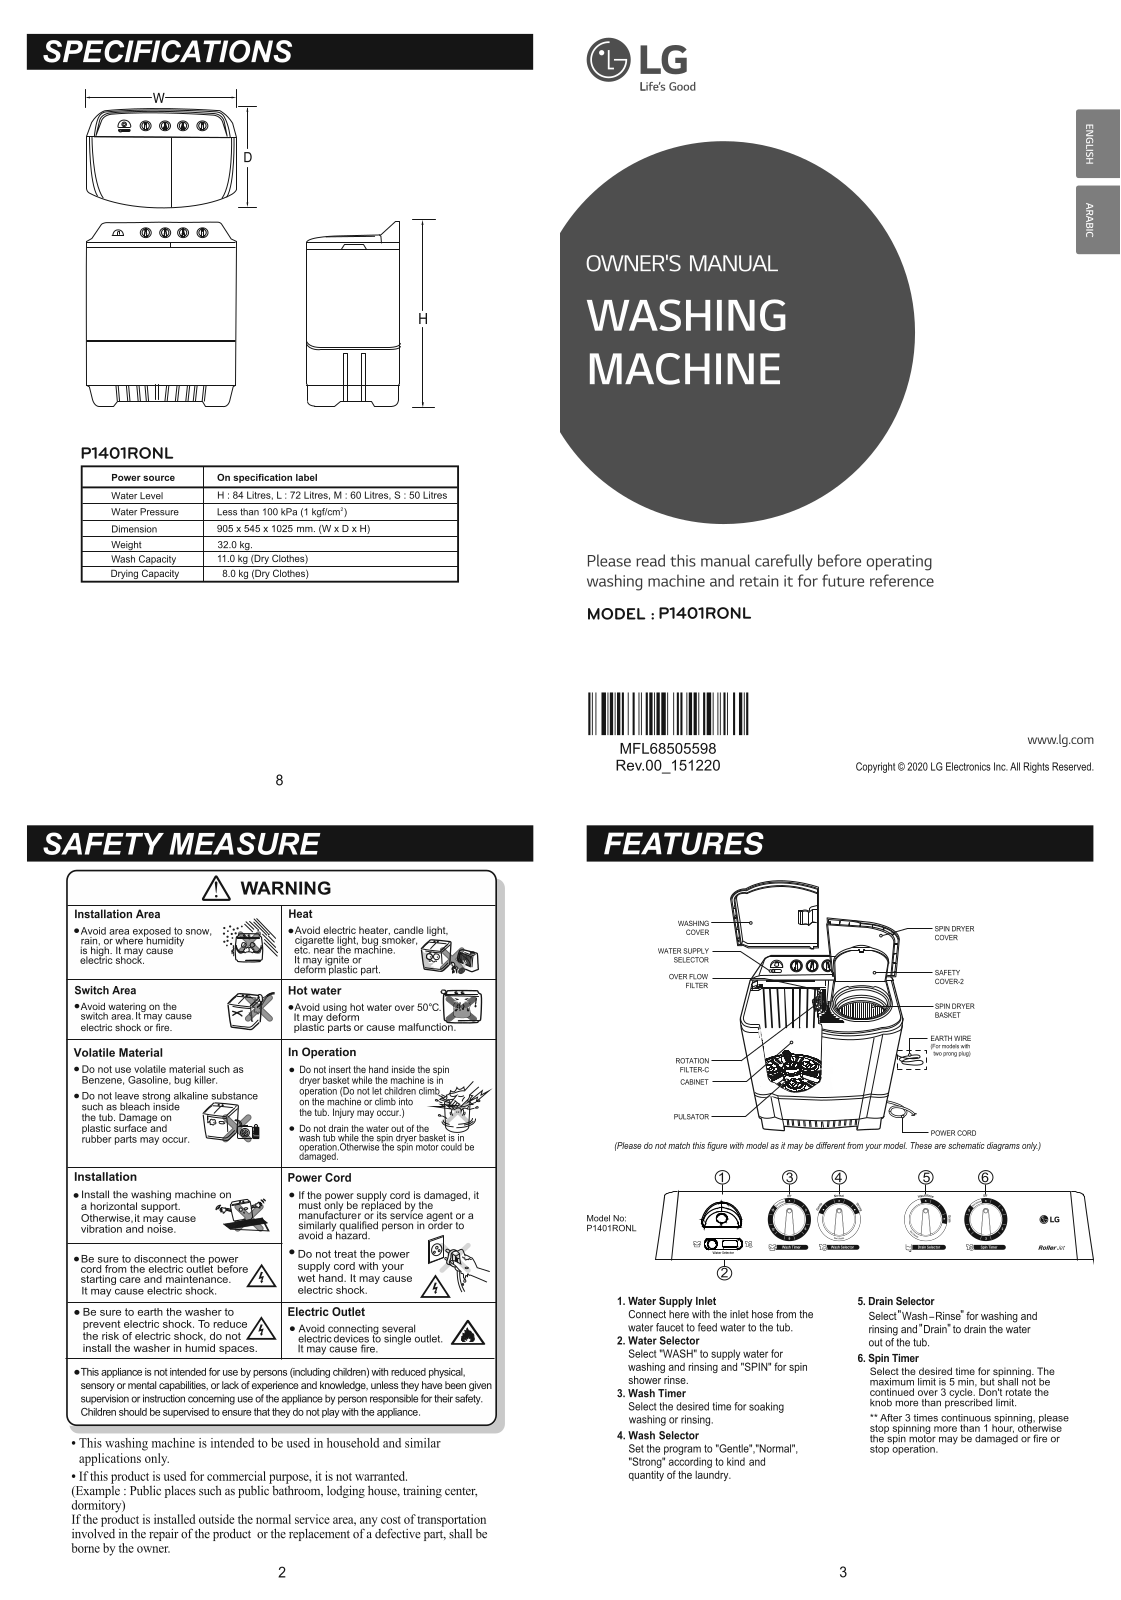 LG P1401RONL Owner’s Manual